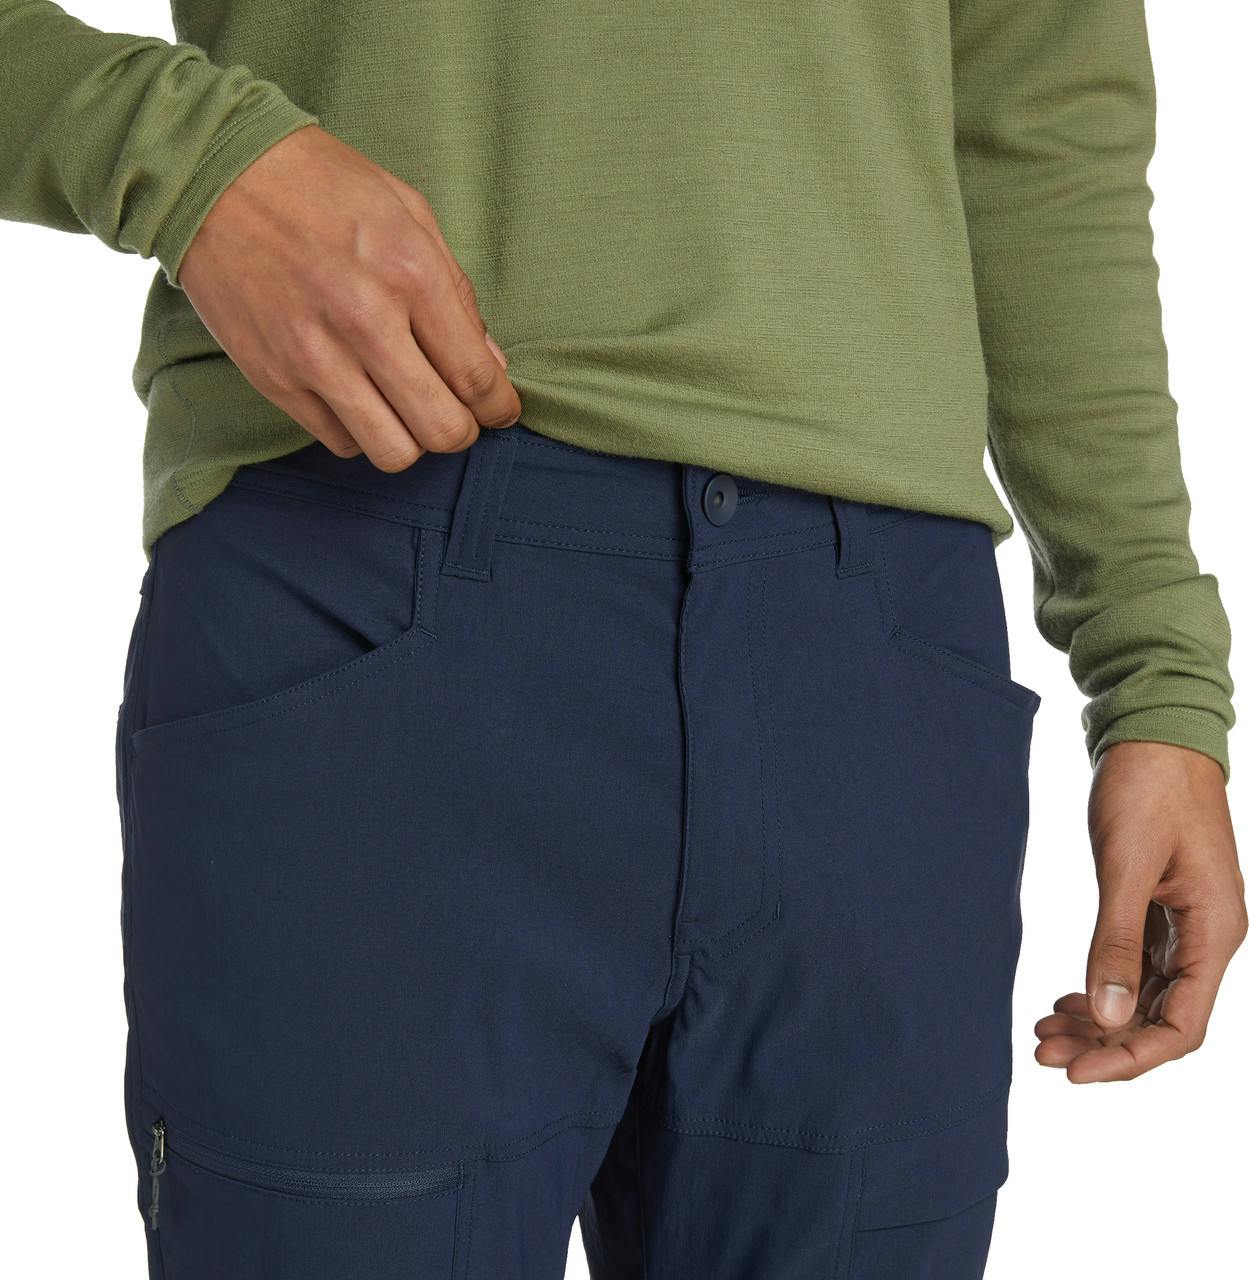 Pantalon extensible Mochilero Marine foncé